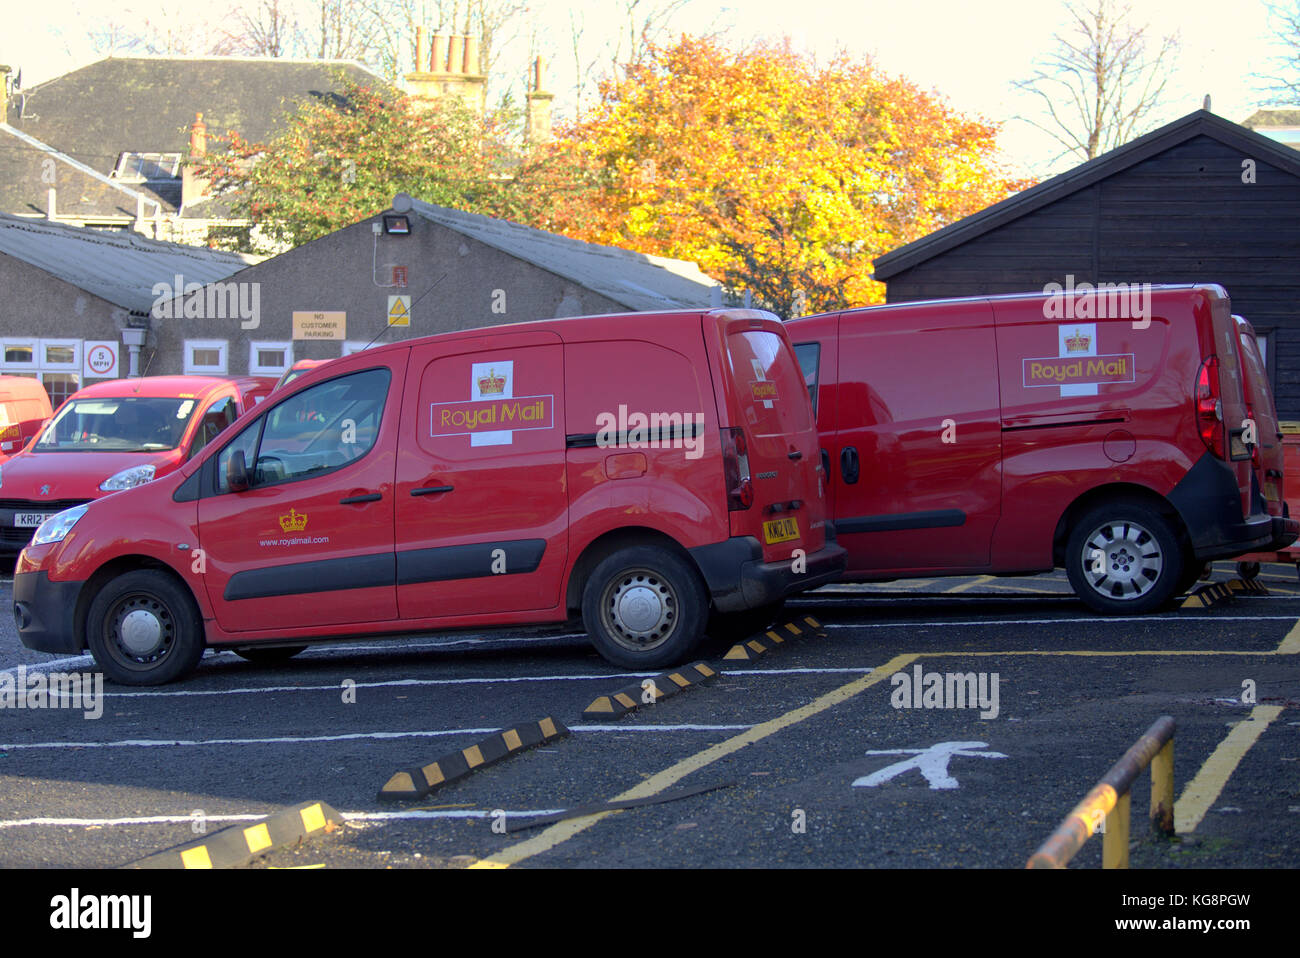 Royal Mail post office depot et fourgonnettes de livraison Livraison glasgow anniesland bureau rouge logo voitures garées comme des conditions de grève Banque D'Images